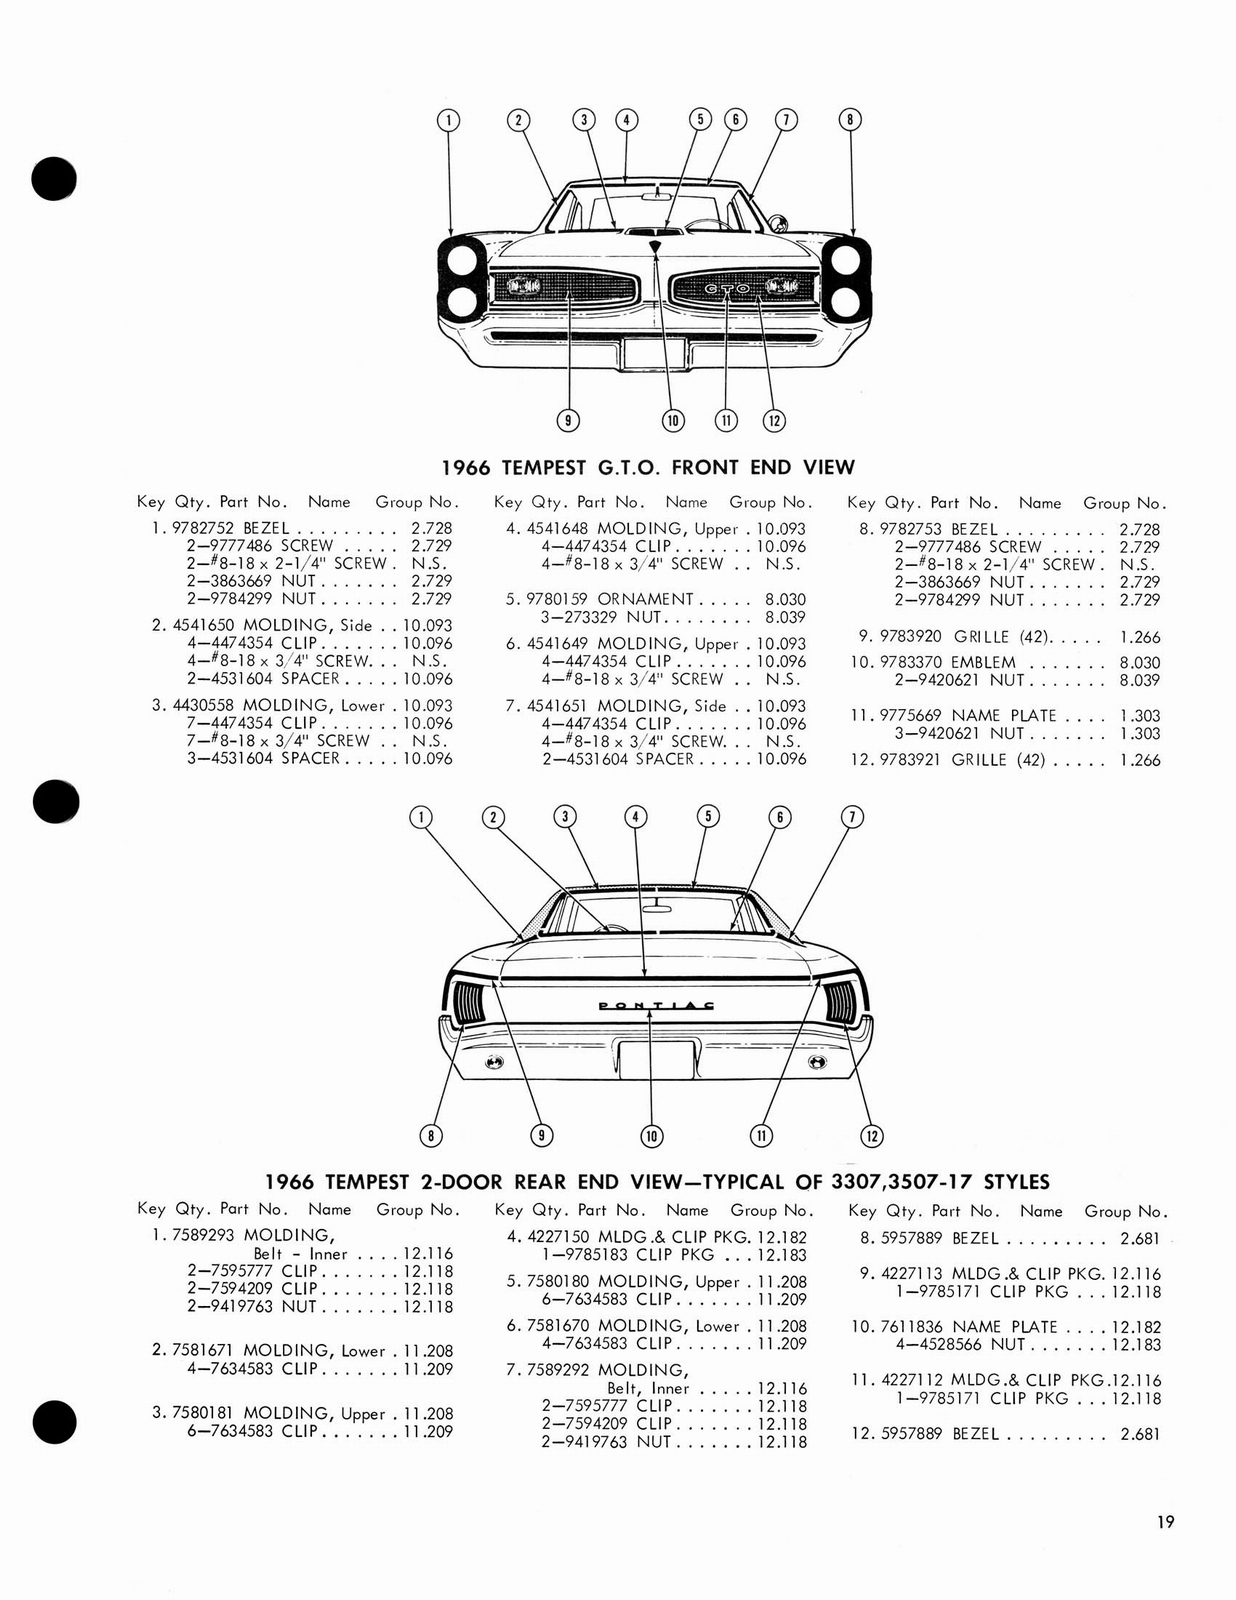 n_1966 Pontiac Molding and Clip Catalog-19.jpg